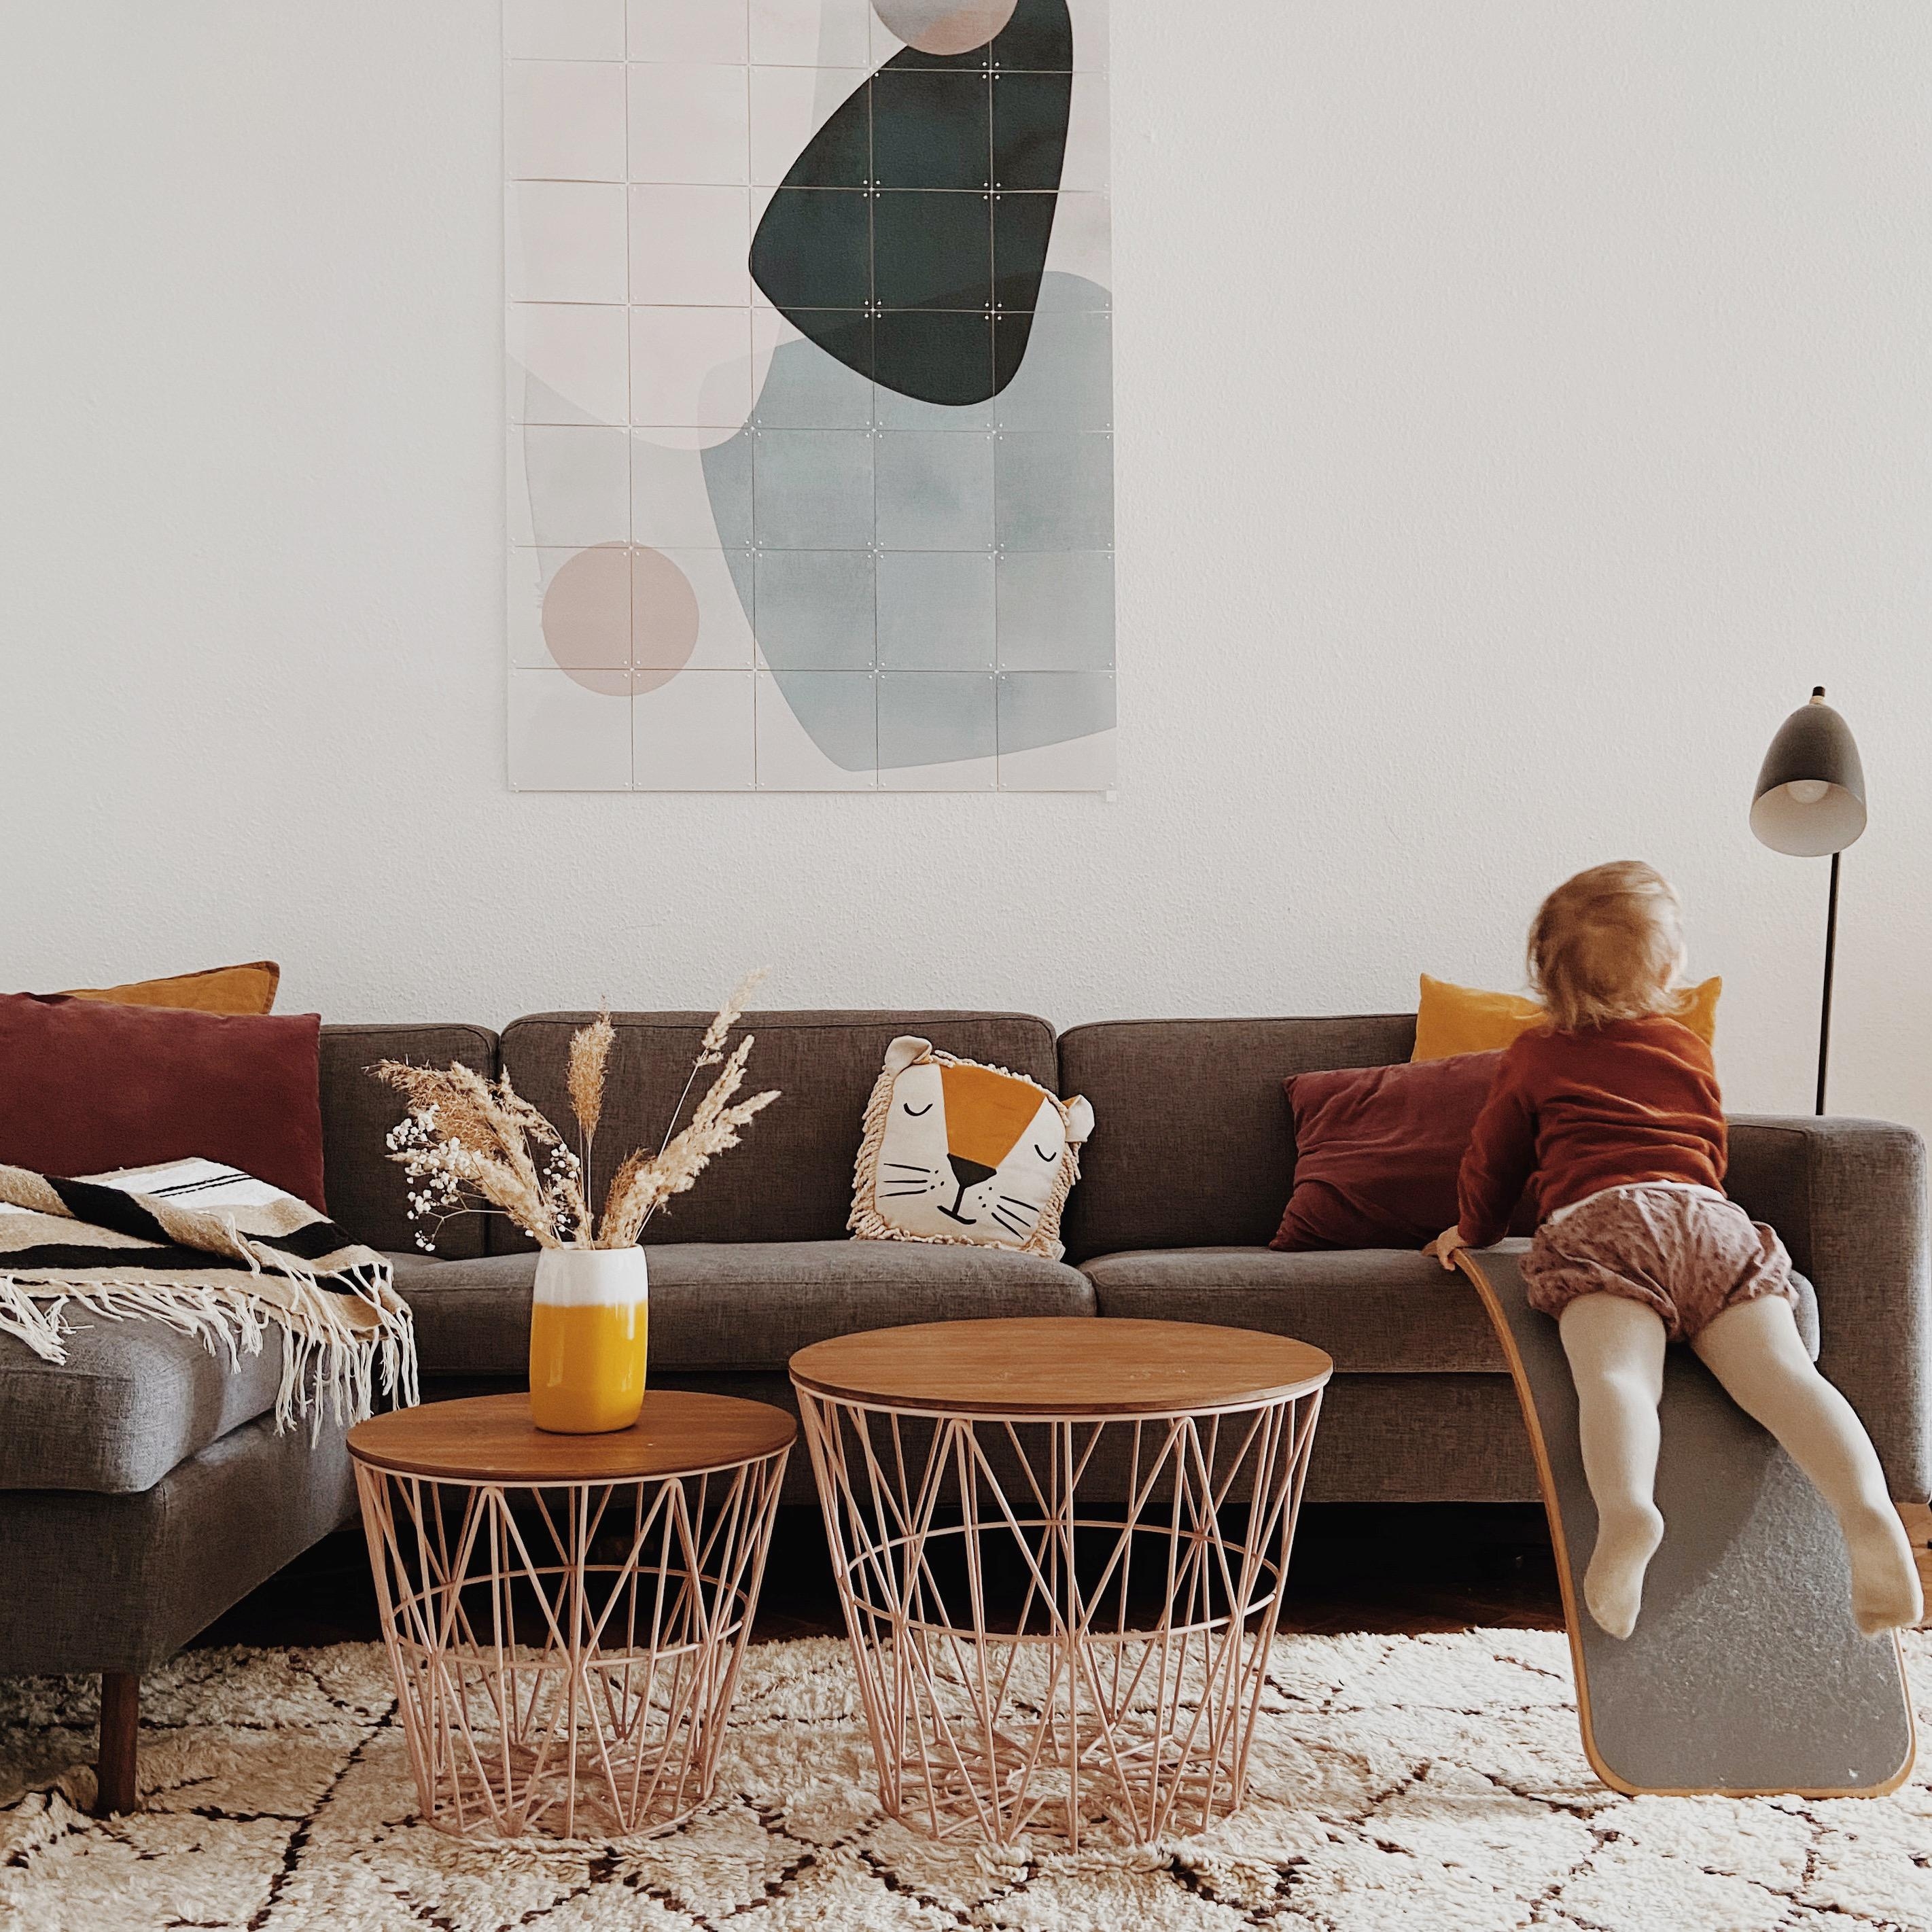 Welcome to our #livingroom!
#altbauliebe #wohnzimmer #sofaecke #hygge #interior #decor